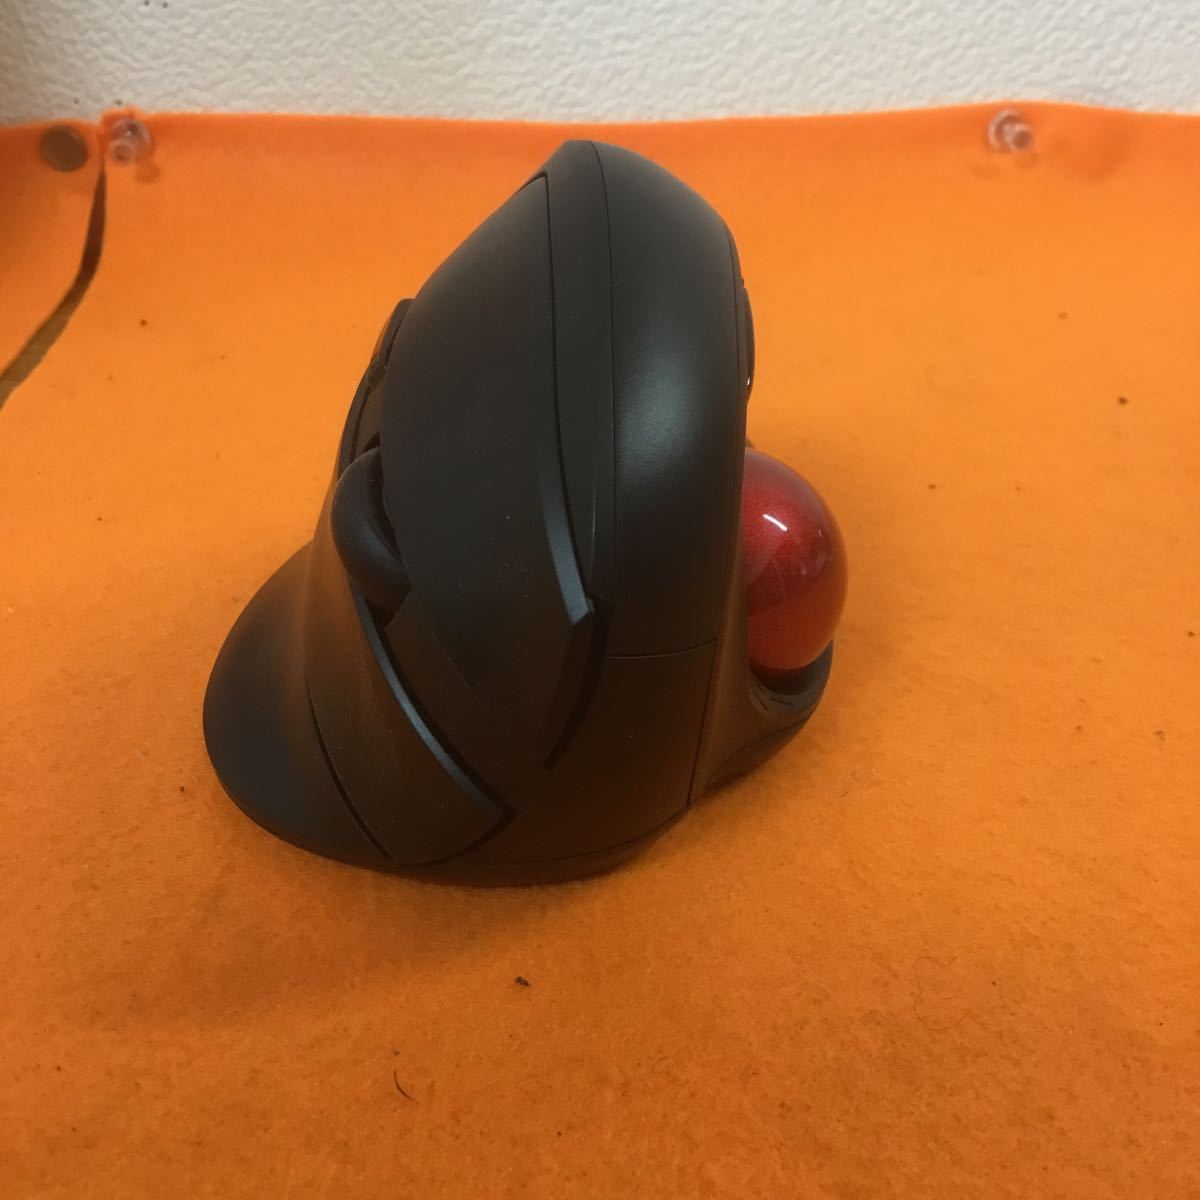 Z-609geo L gono Miku s мышь Bluetooth + беспроводная мышь шаровой манипулятор мышь 6 кнопка GRFD-MUS VM06T BK * рабочее состояние подтверждено 